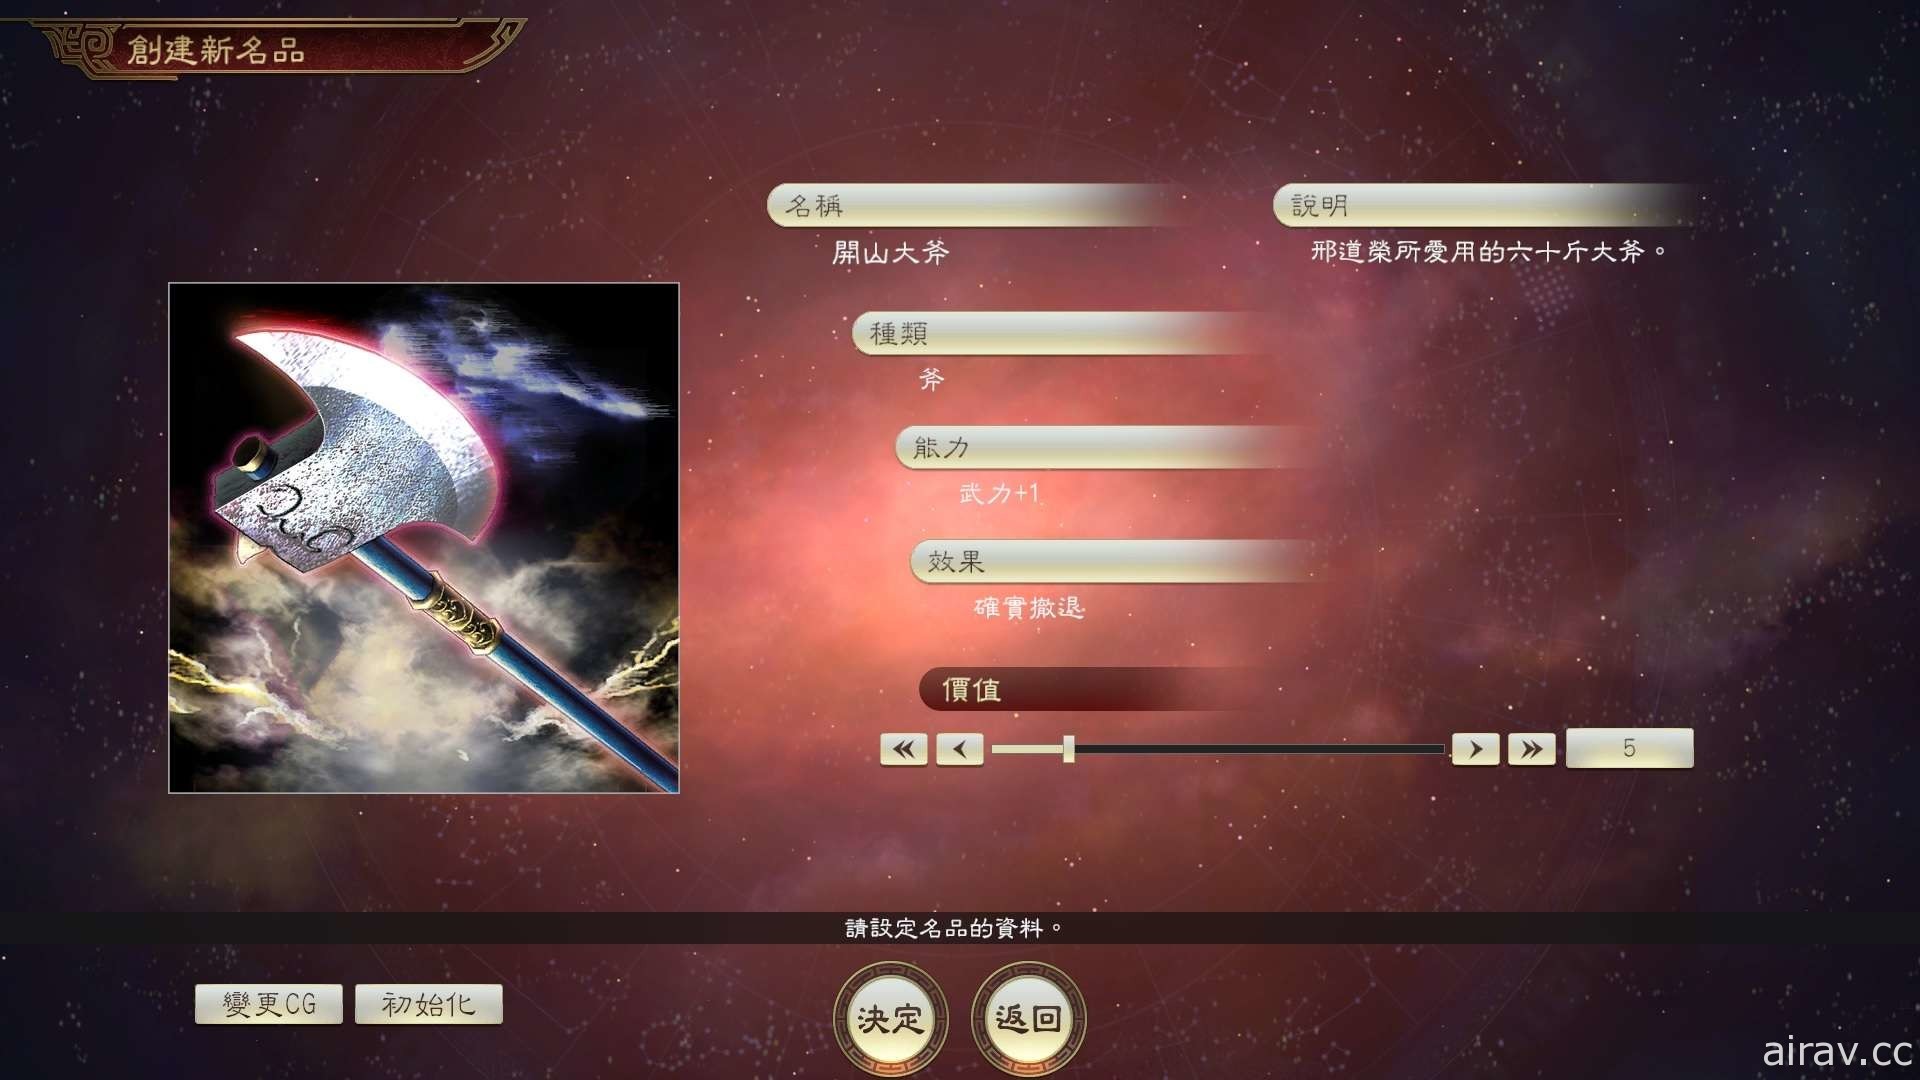 《三國志 14 with 威力加強版》推出假想劇本「華北霸者」與付費編輯功能第 4 彈